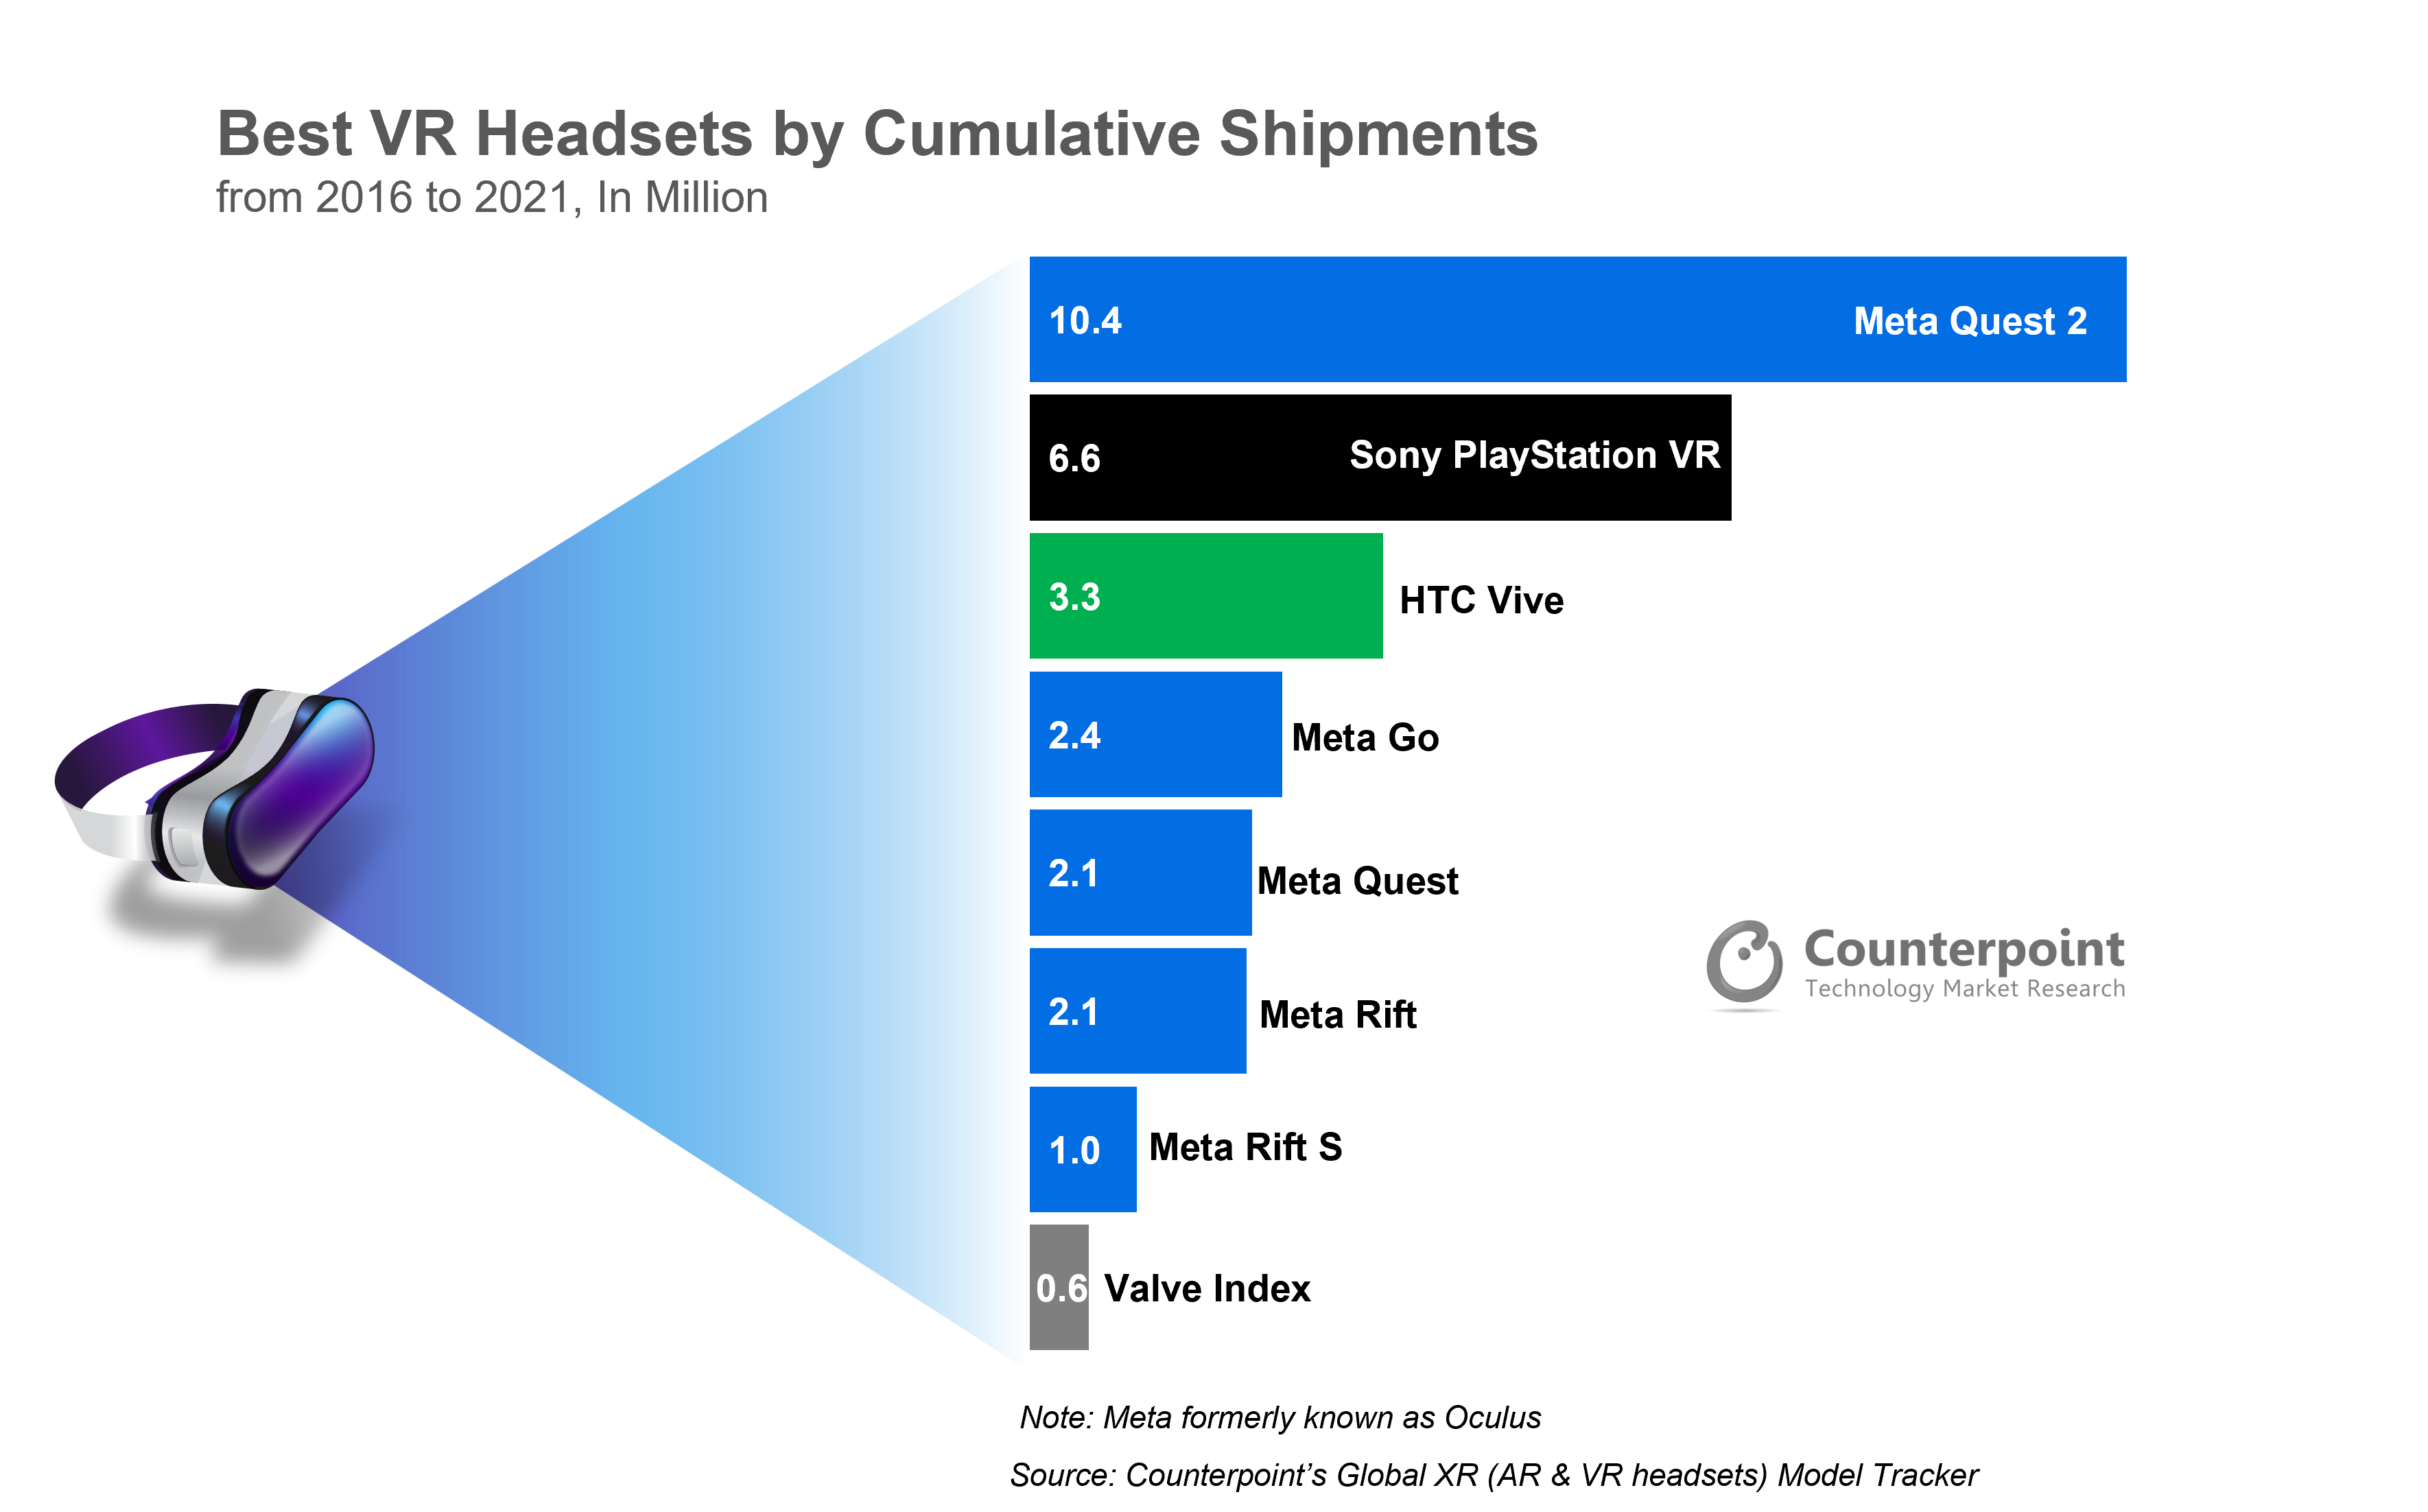 元Quest 2 is the First VR Headset to Exceed 10 million Shipments